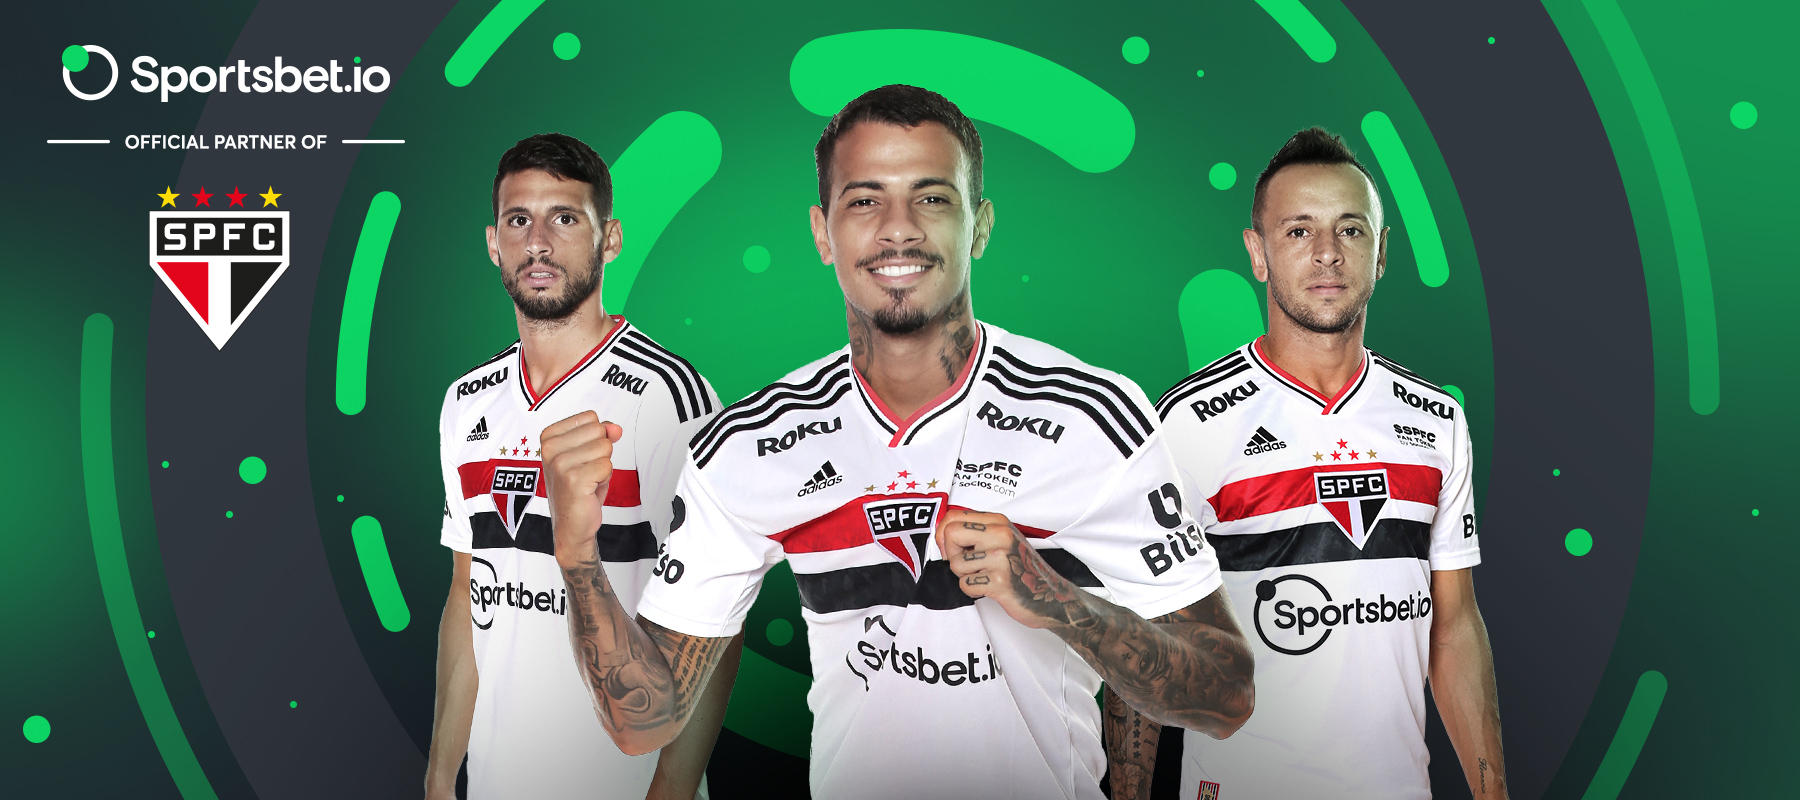 Sportsbet.io ortaklarıyla tanışın: São Paulo FC